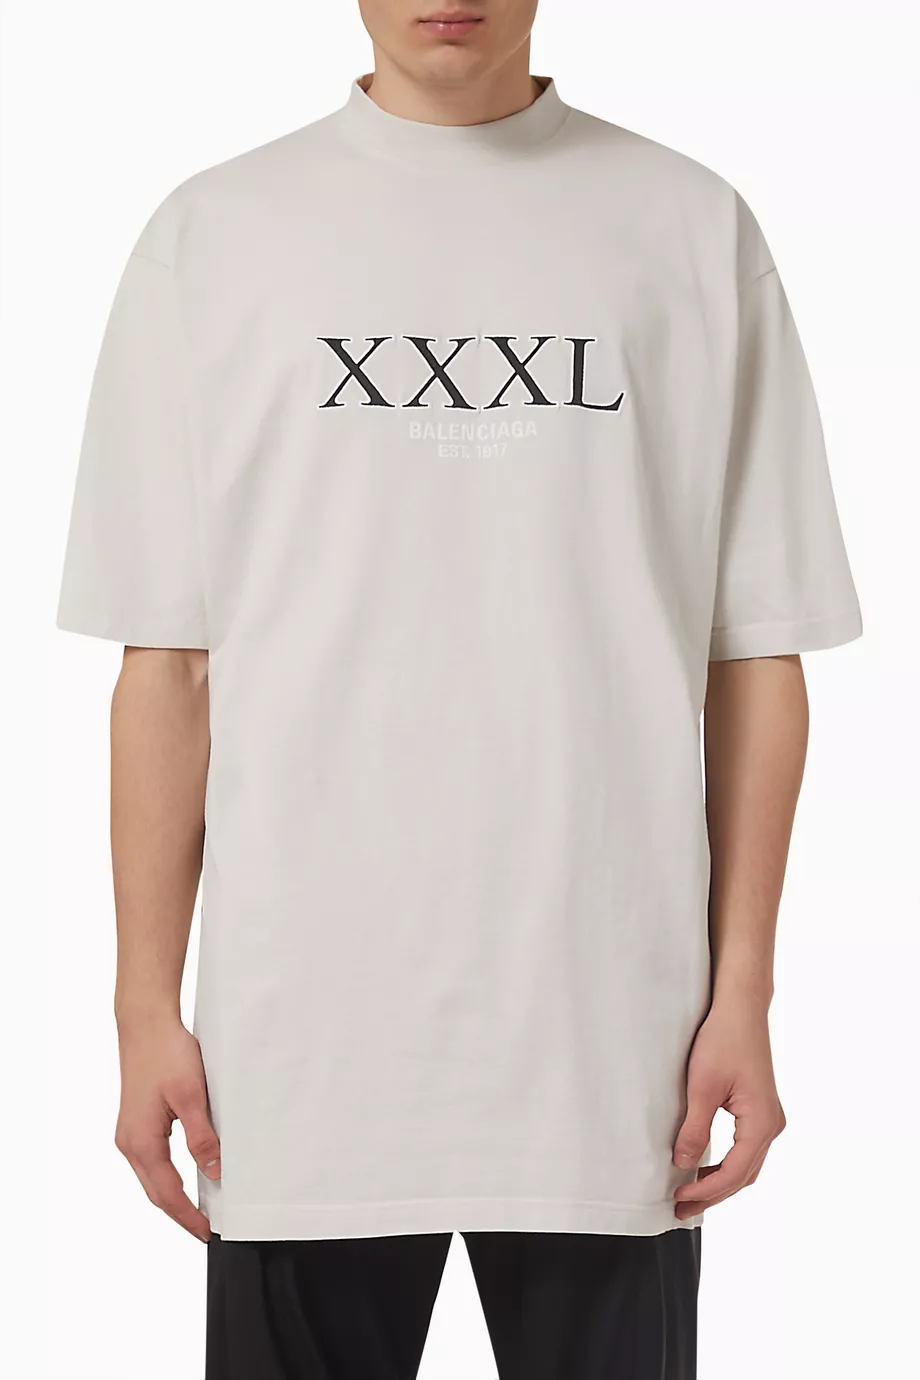 20,064円BALENCIAGA XXXL 3XL Inside out Tシャツ